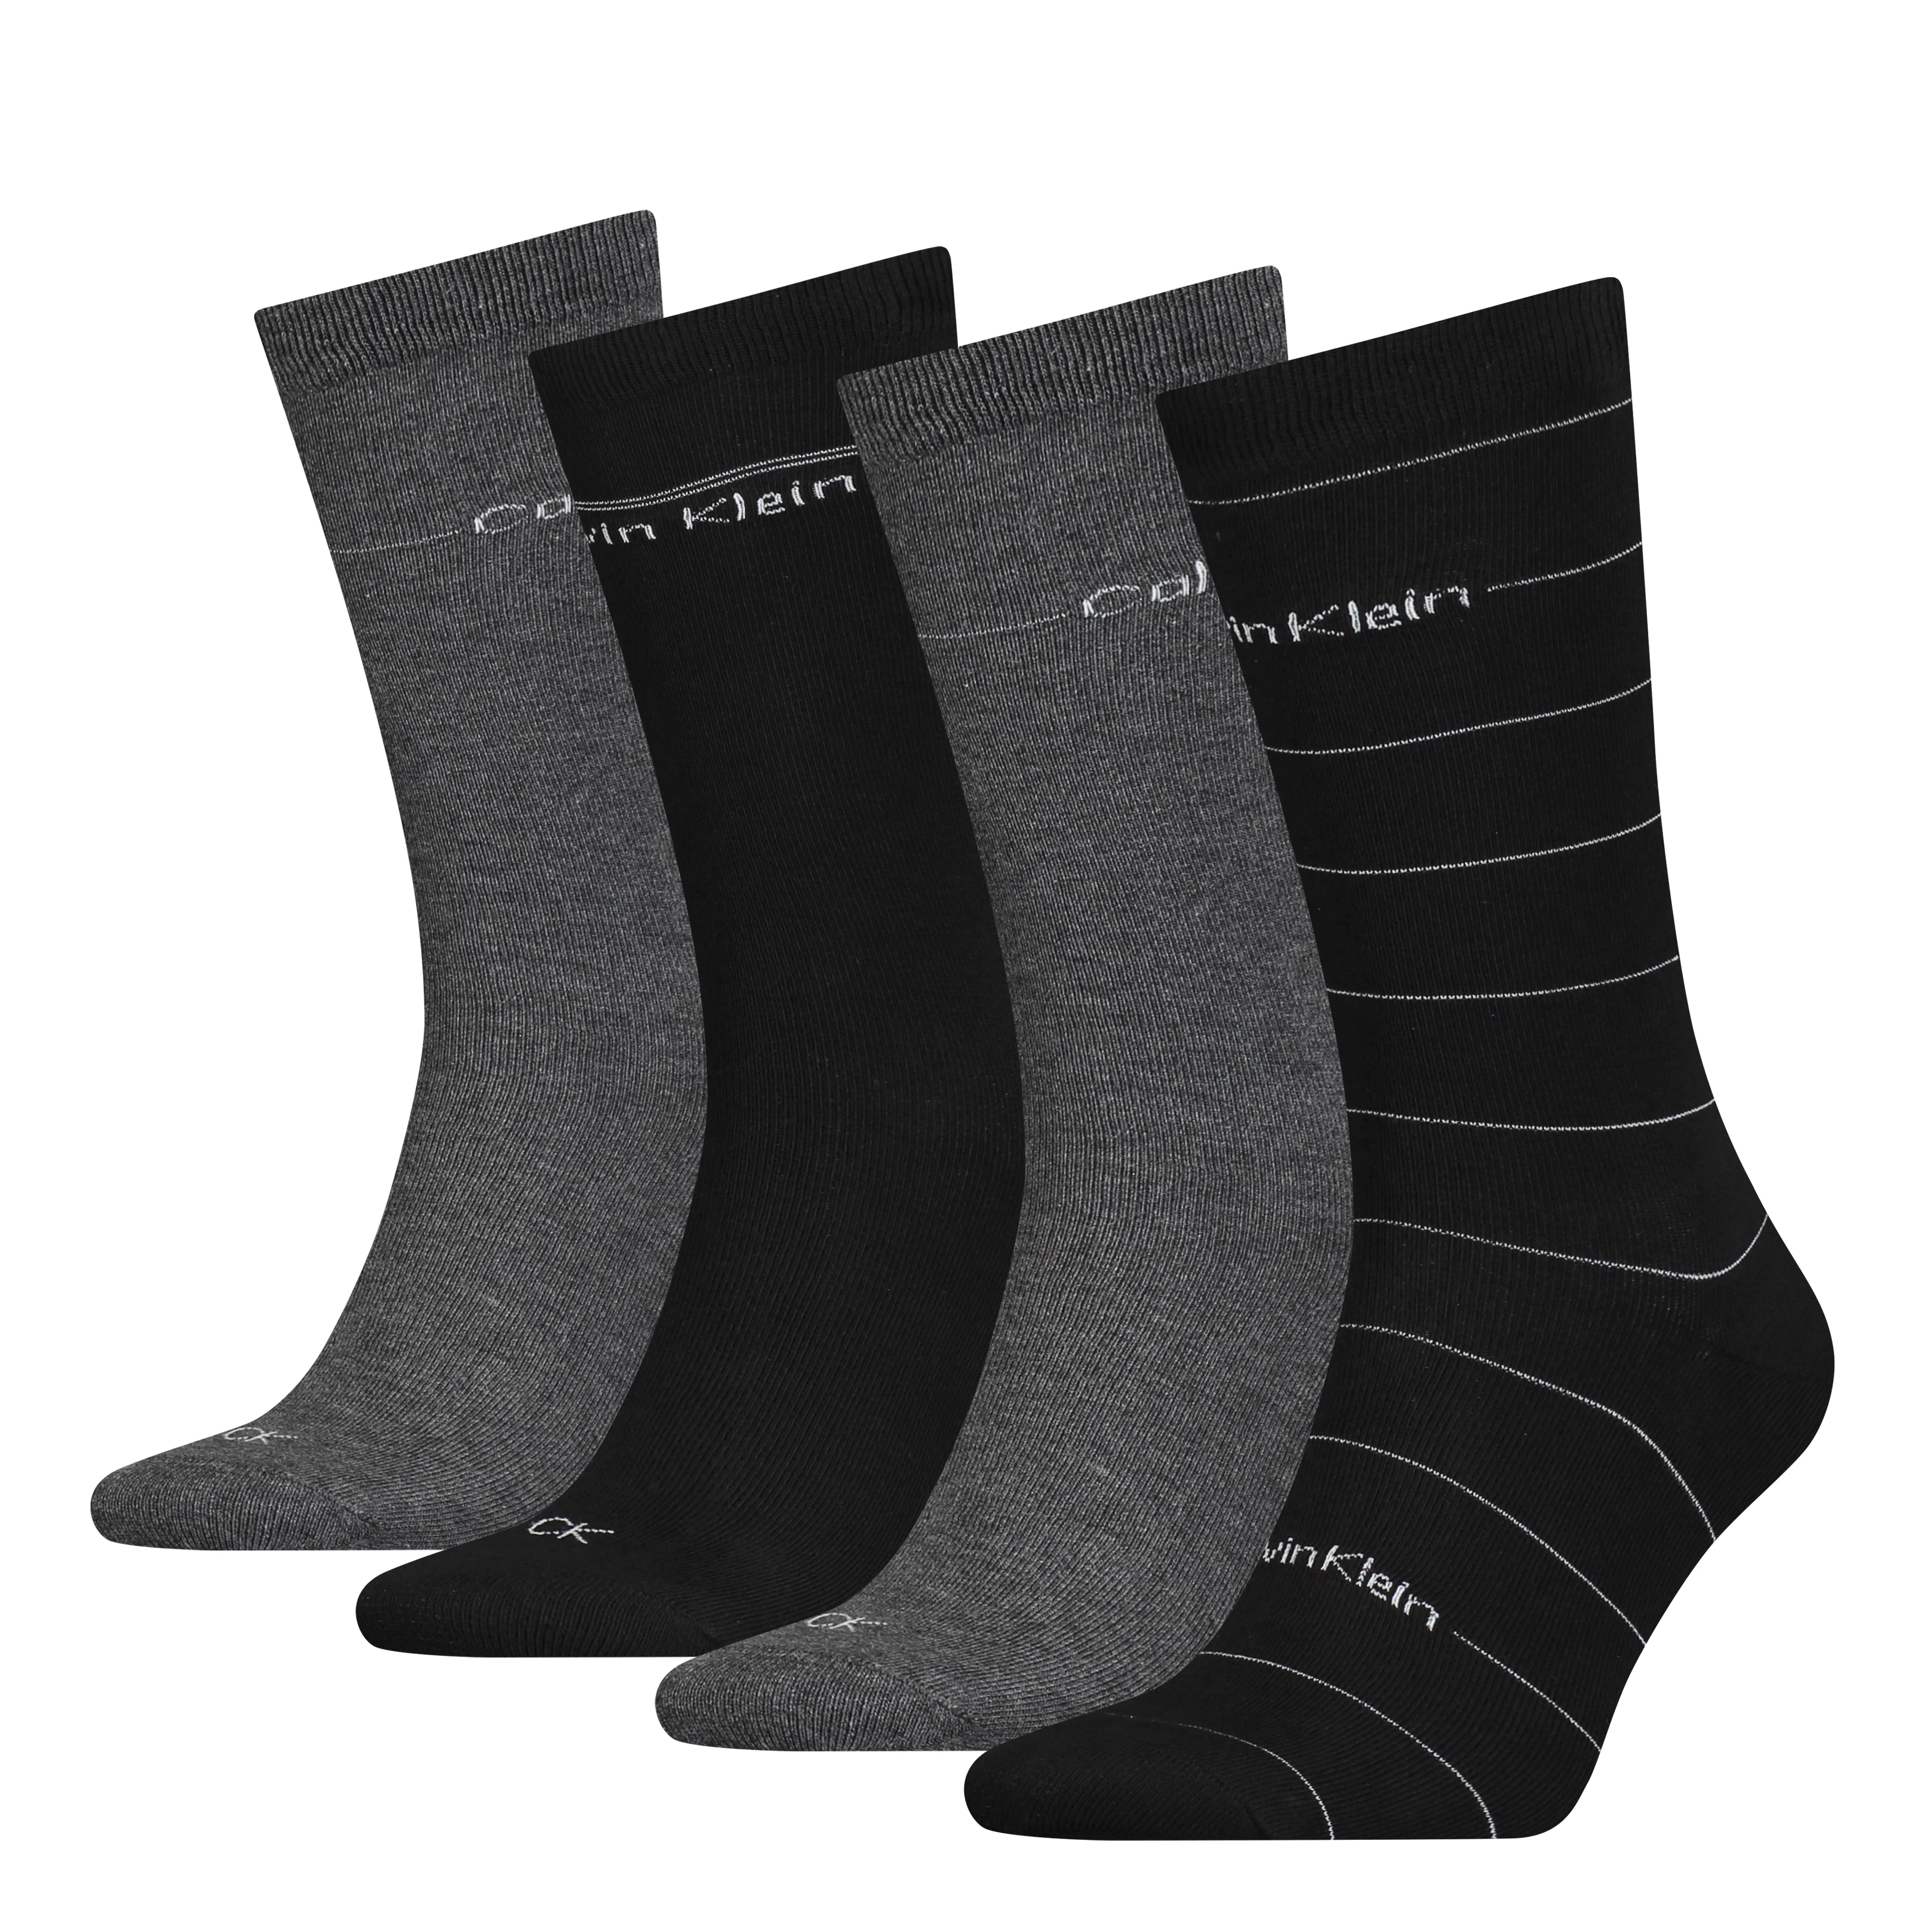 CALVIN KLEIN - ponožky 4PACK tin black combo v darčekovom balení